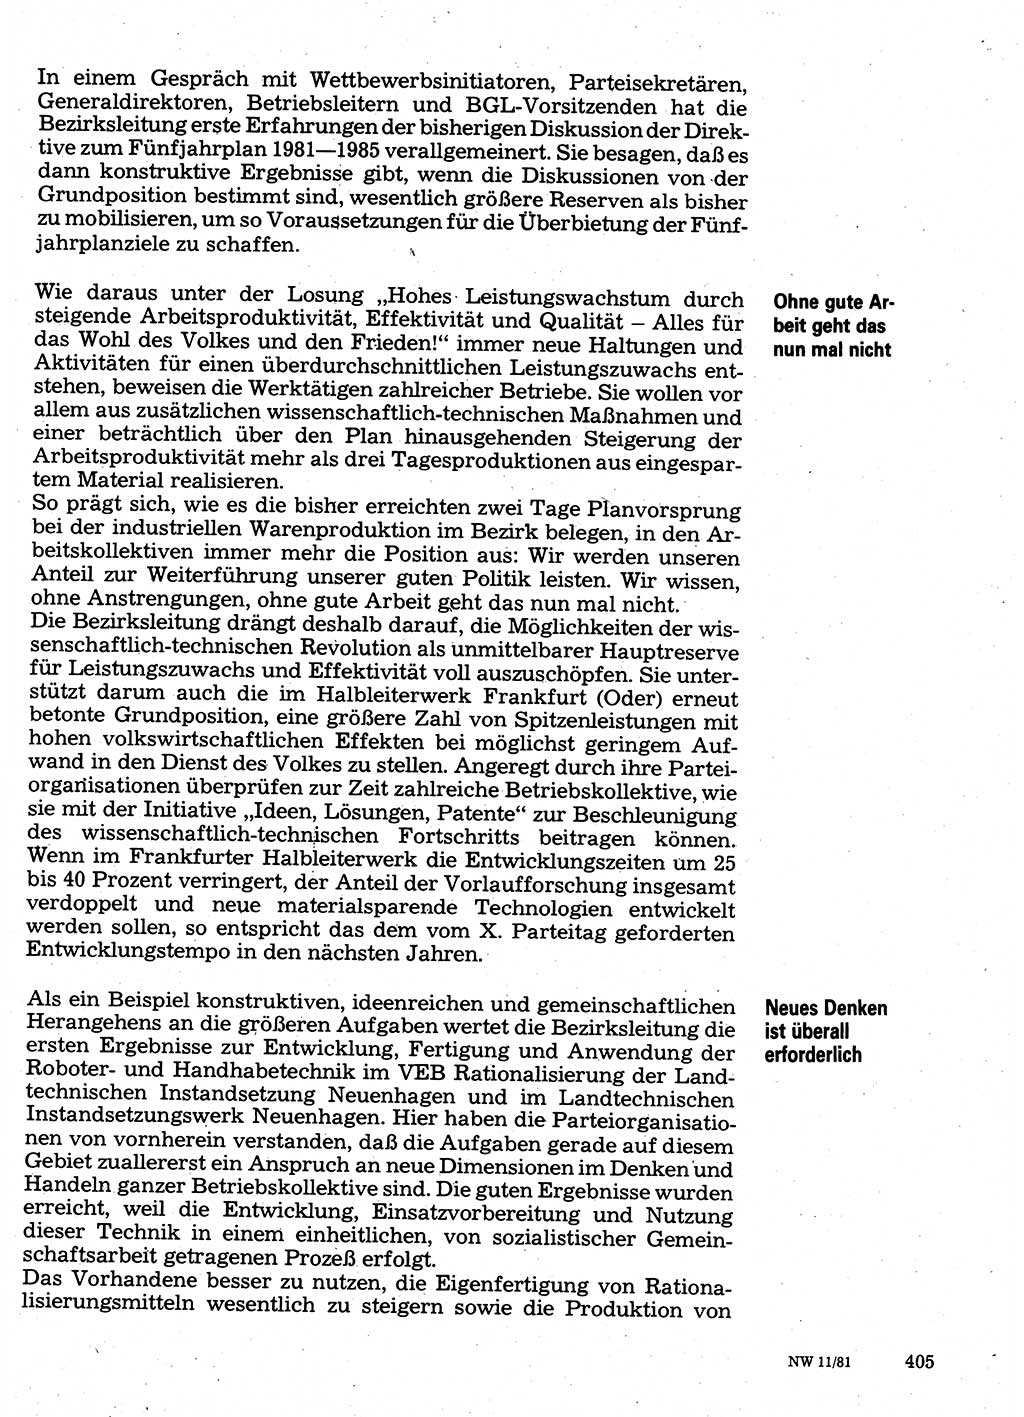 Neuer Weg (NW), Organ des Zentralkomitees (ZK) der SED (Sozialistische Einheitspartei Deutschlands) für Fragen des Parteilebens, 36. Jahrgang [Deutsche Demokratische Republik (DDR)] 1981, Seite 405 (NW ZK SED DDR 1981, S. 405)